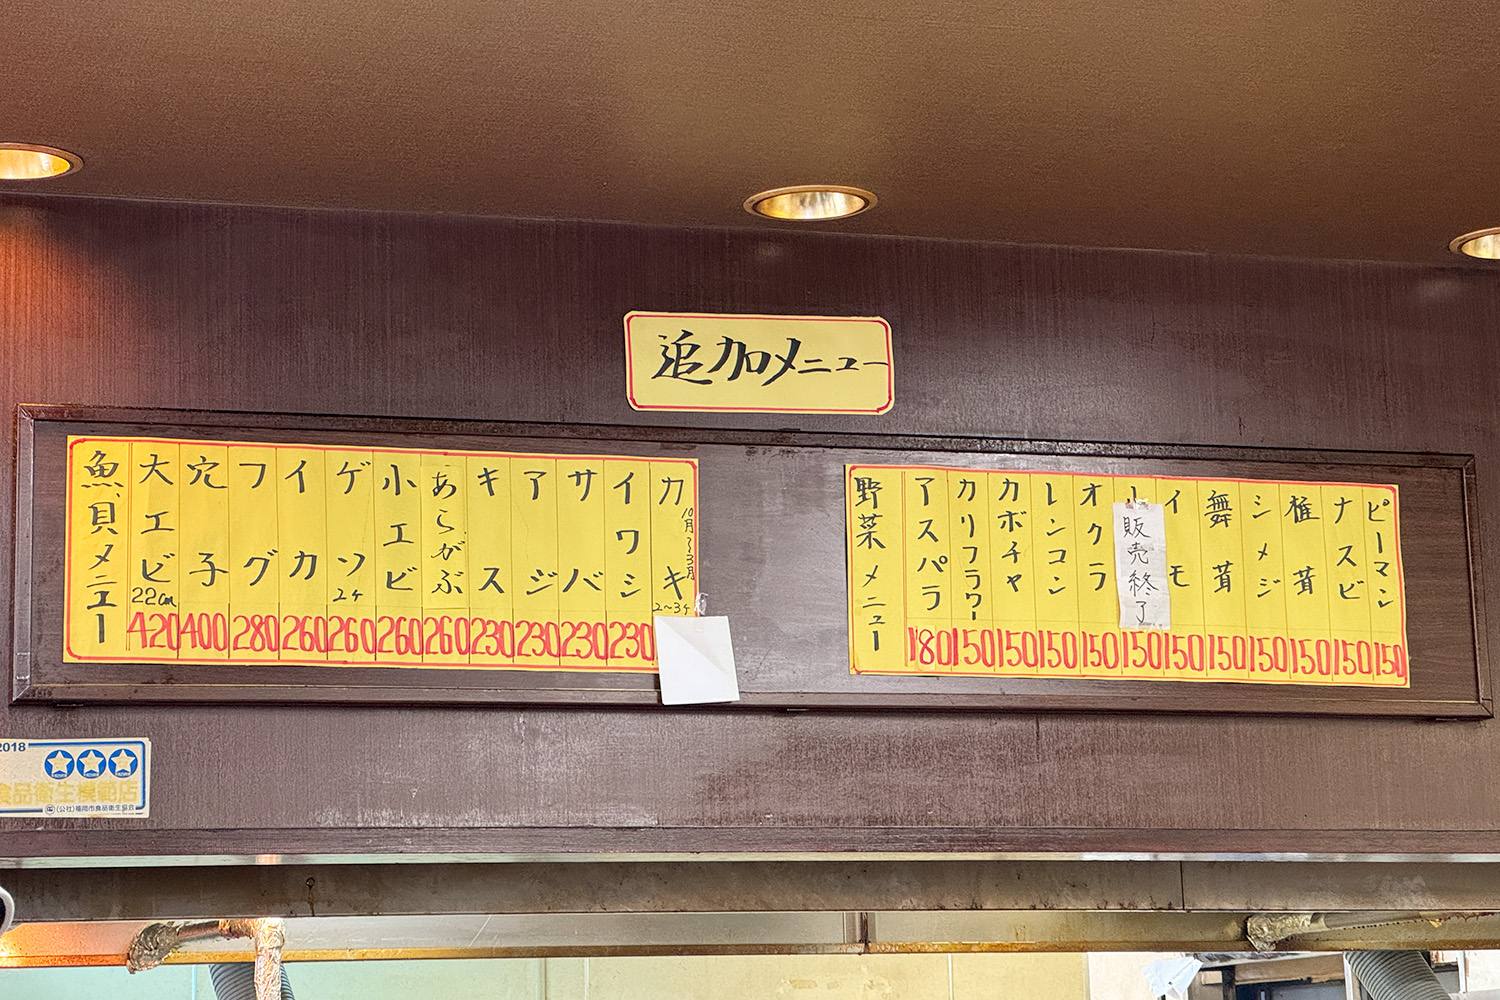 だるまの天ぷら定食 店内の追加メニュー